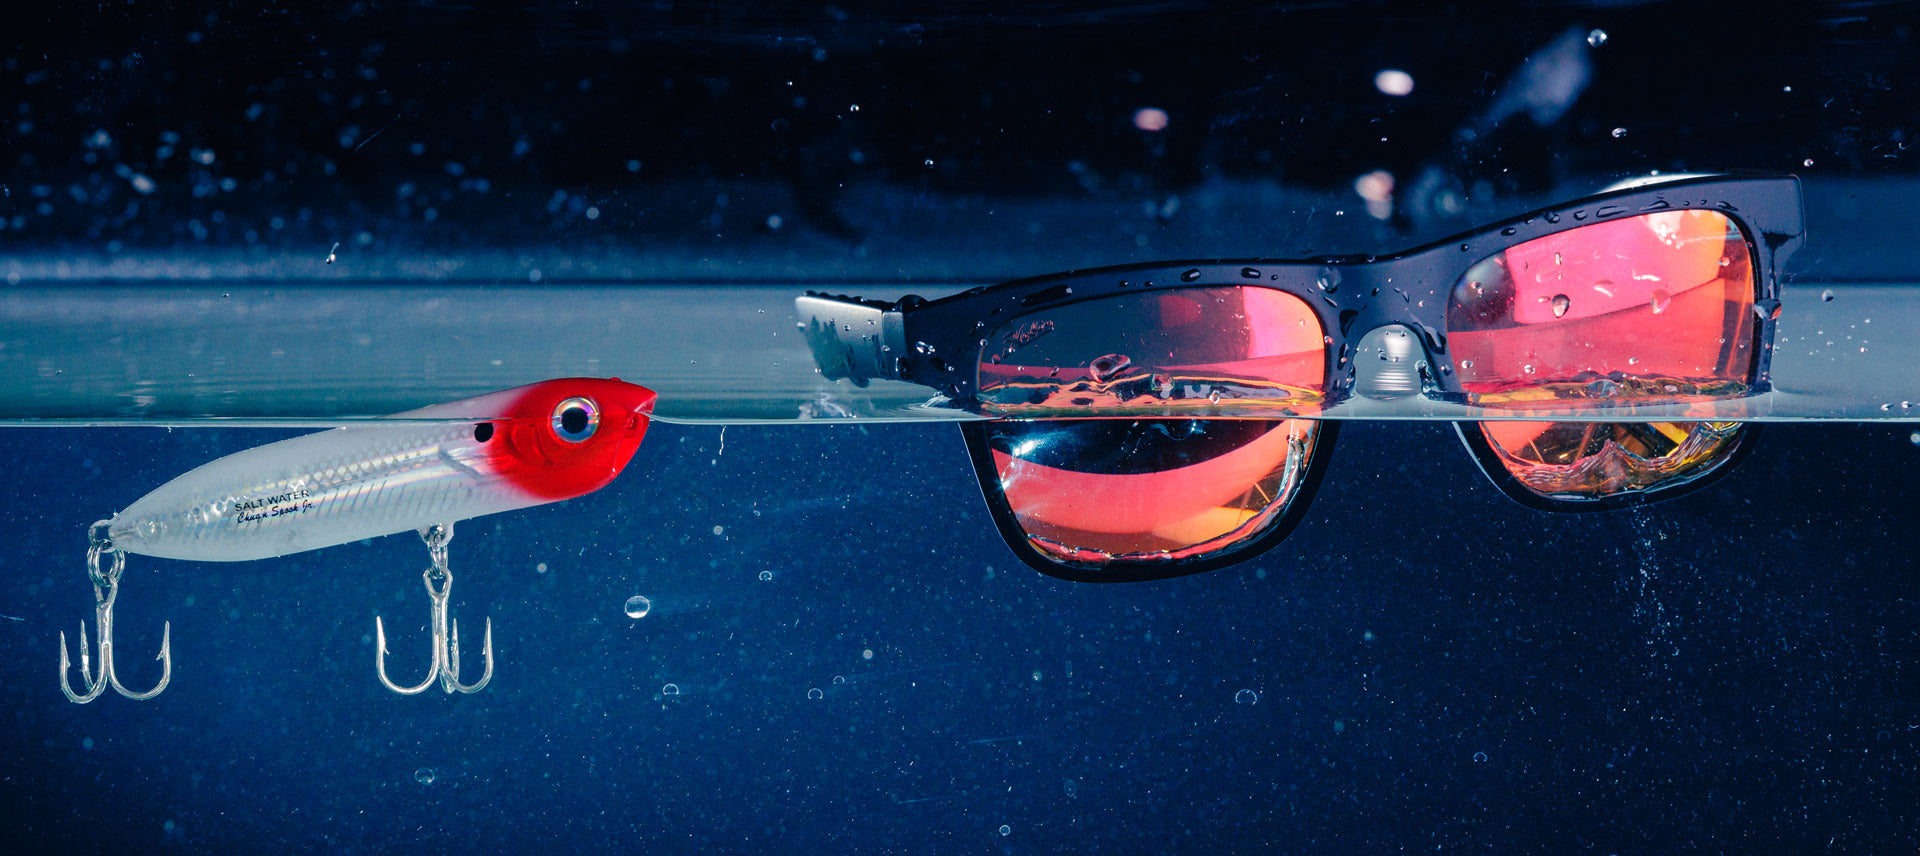 Hobie Eyewear Coastal Polarized Sunglasses floating next to a fishing lure.